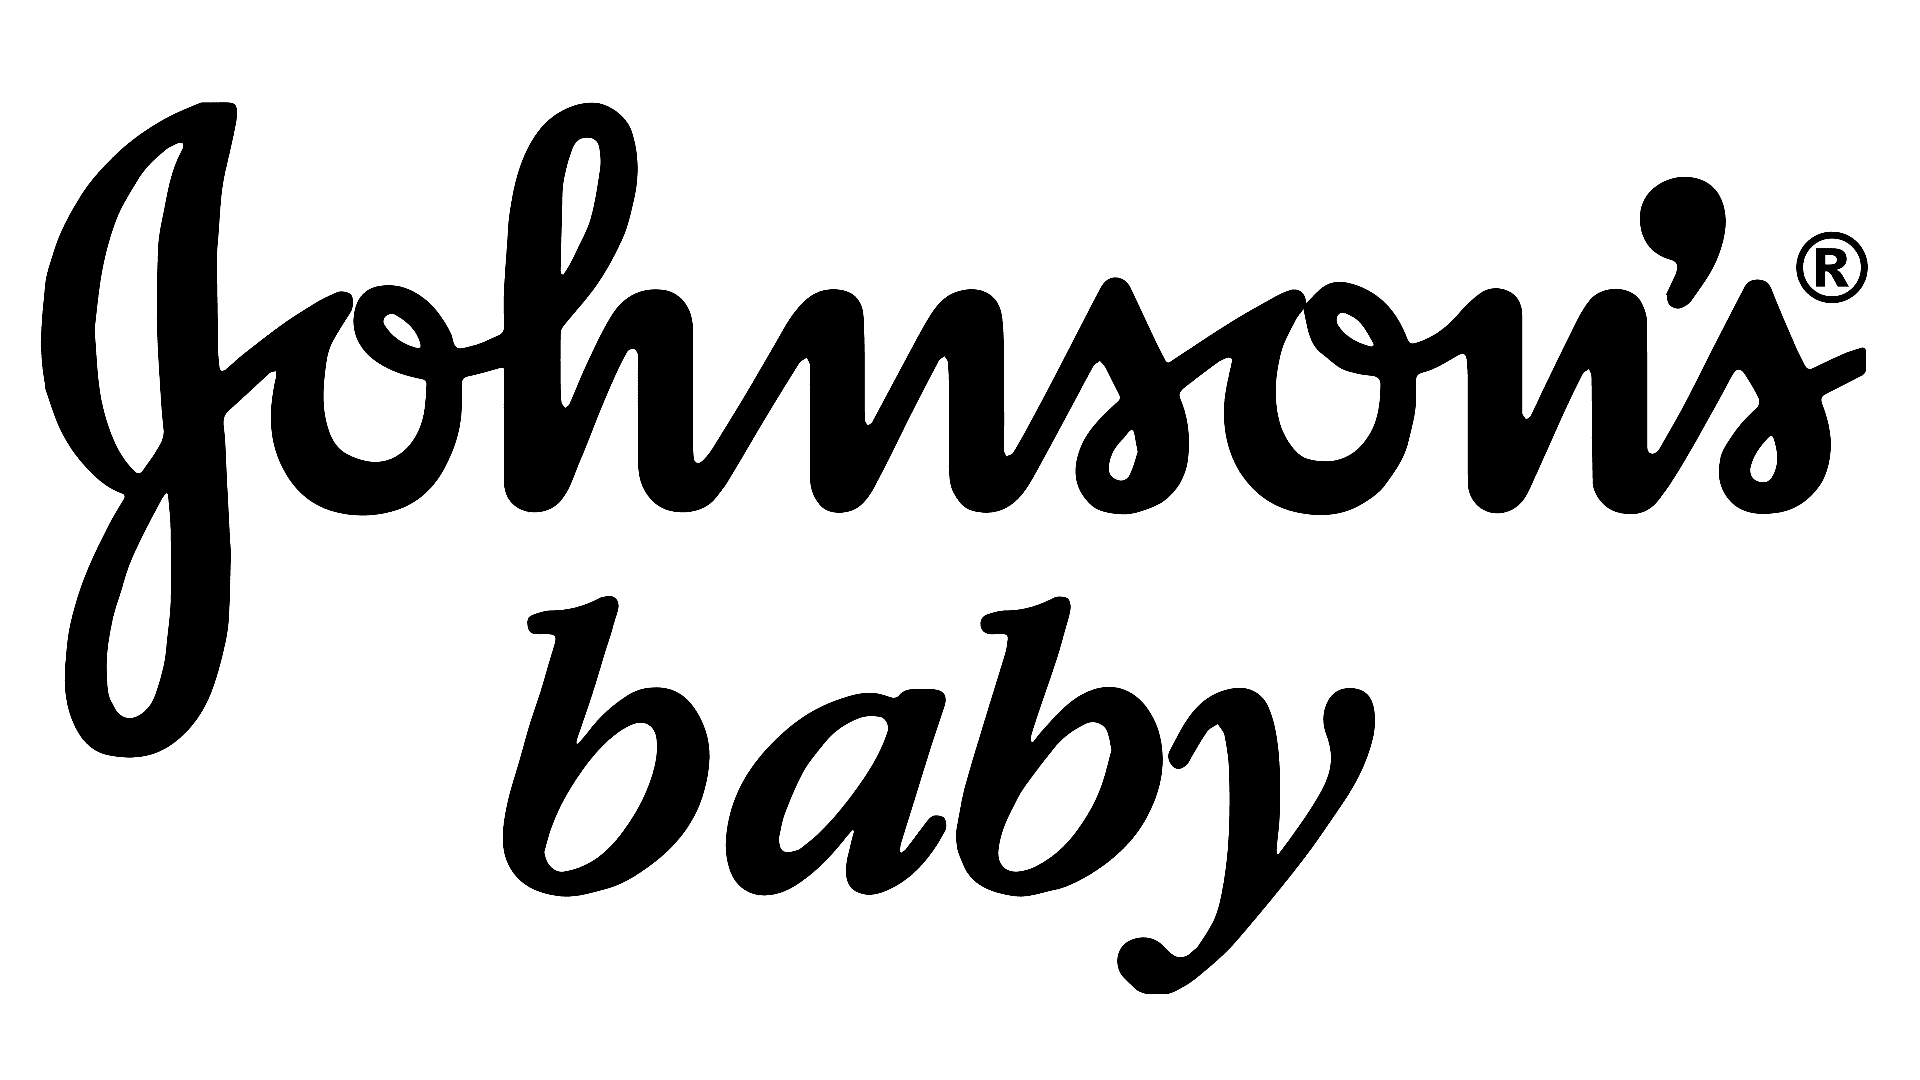 Brand: Johnson's Baby